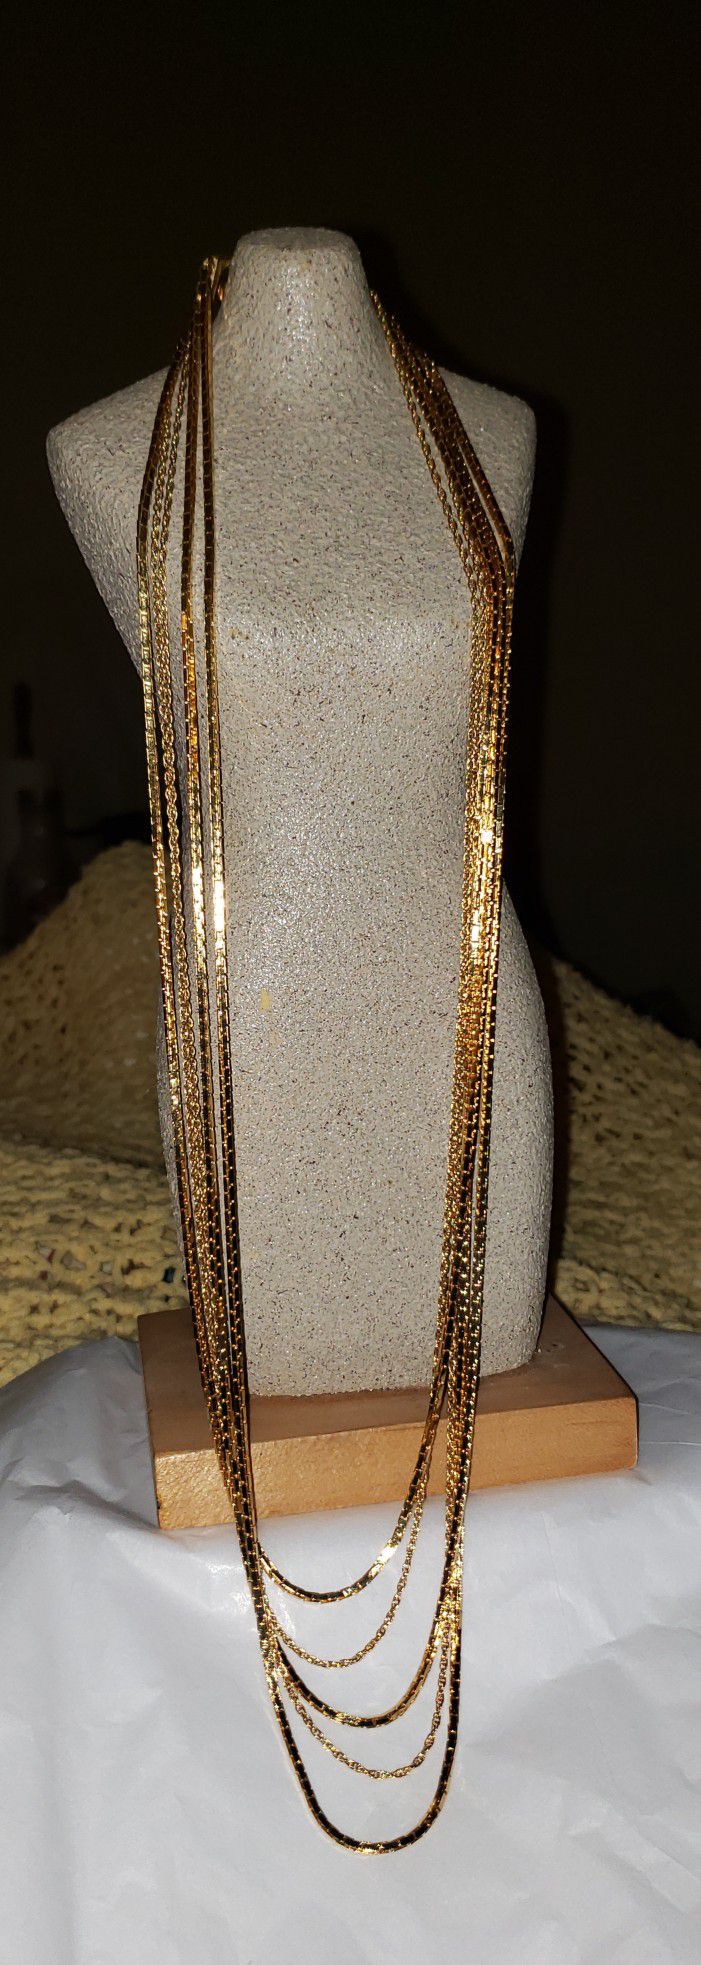 Vintage gold costume necklace 5 strand